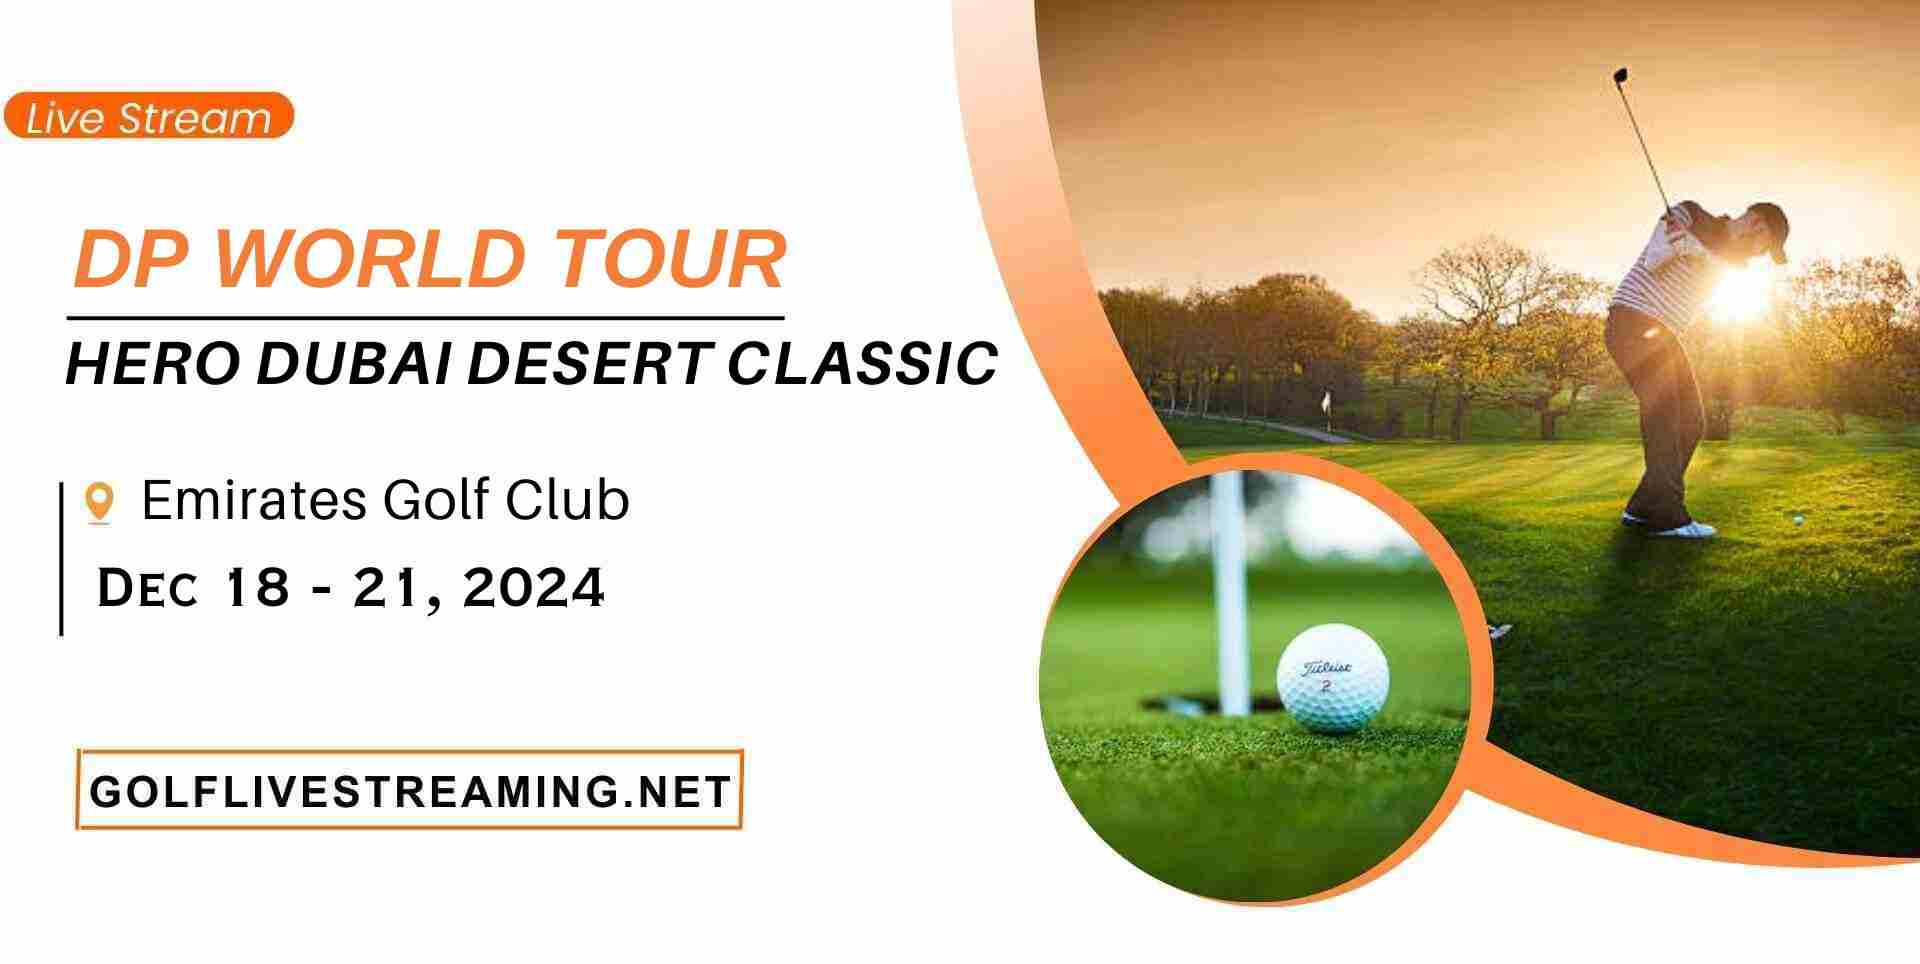 Omega Dubai Desert Classic 2019 Golf Tournament